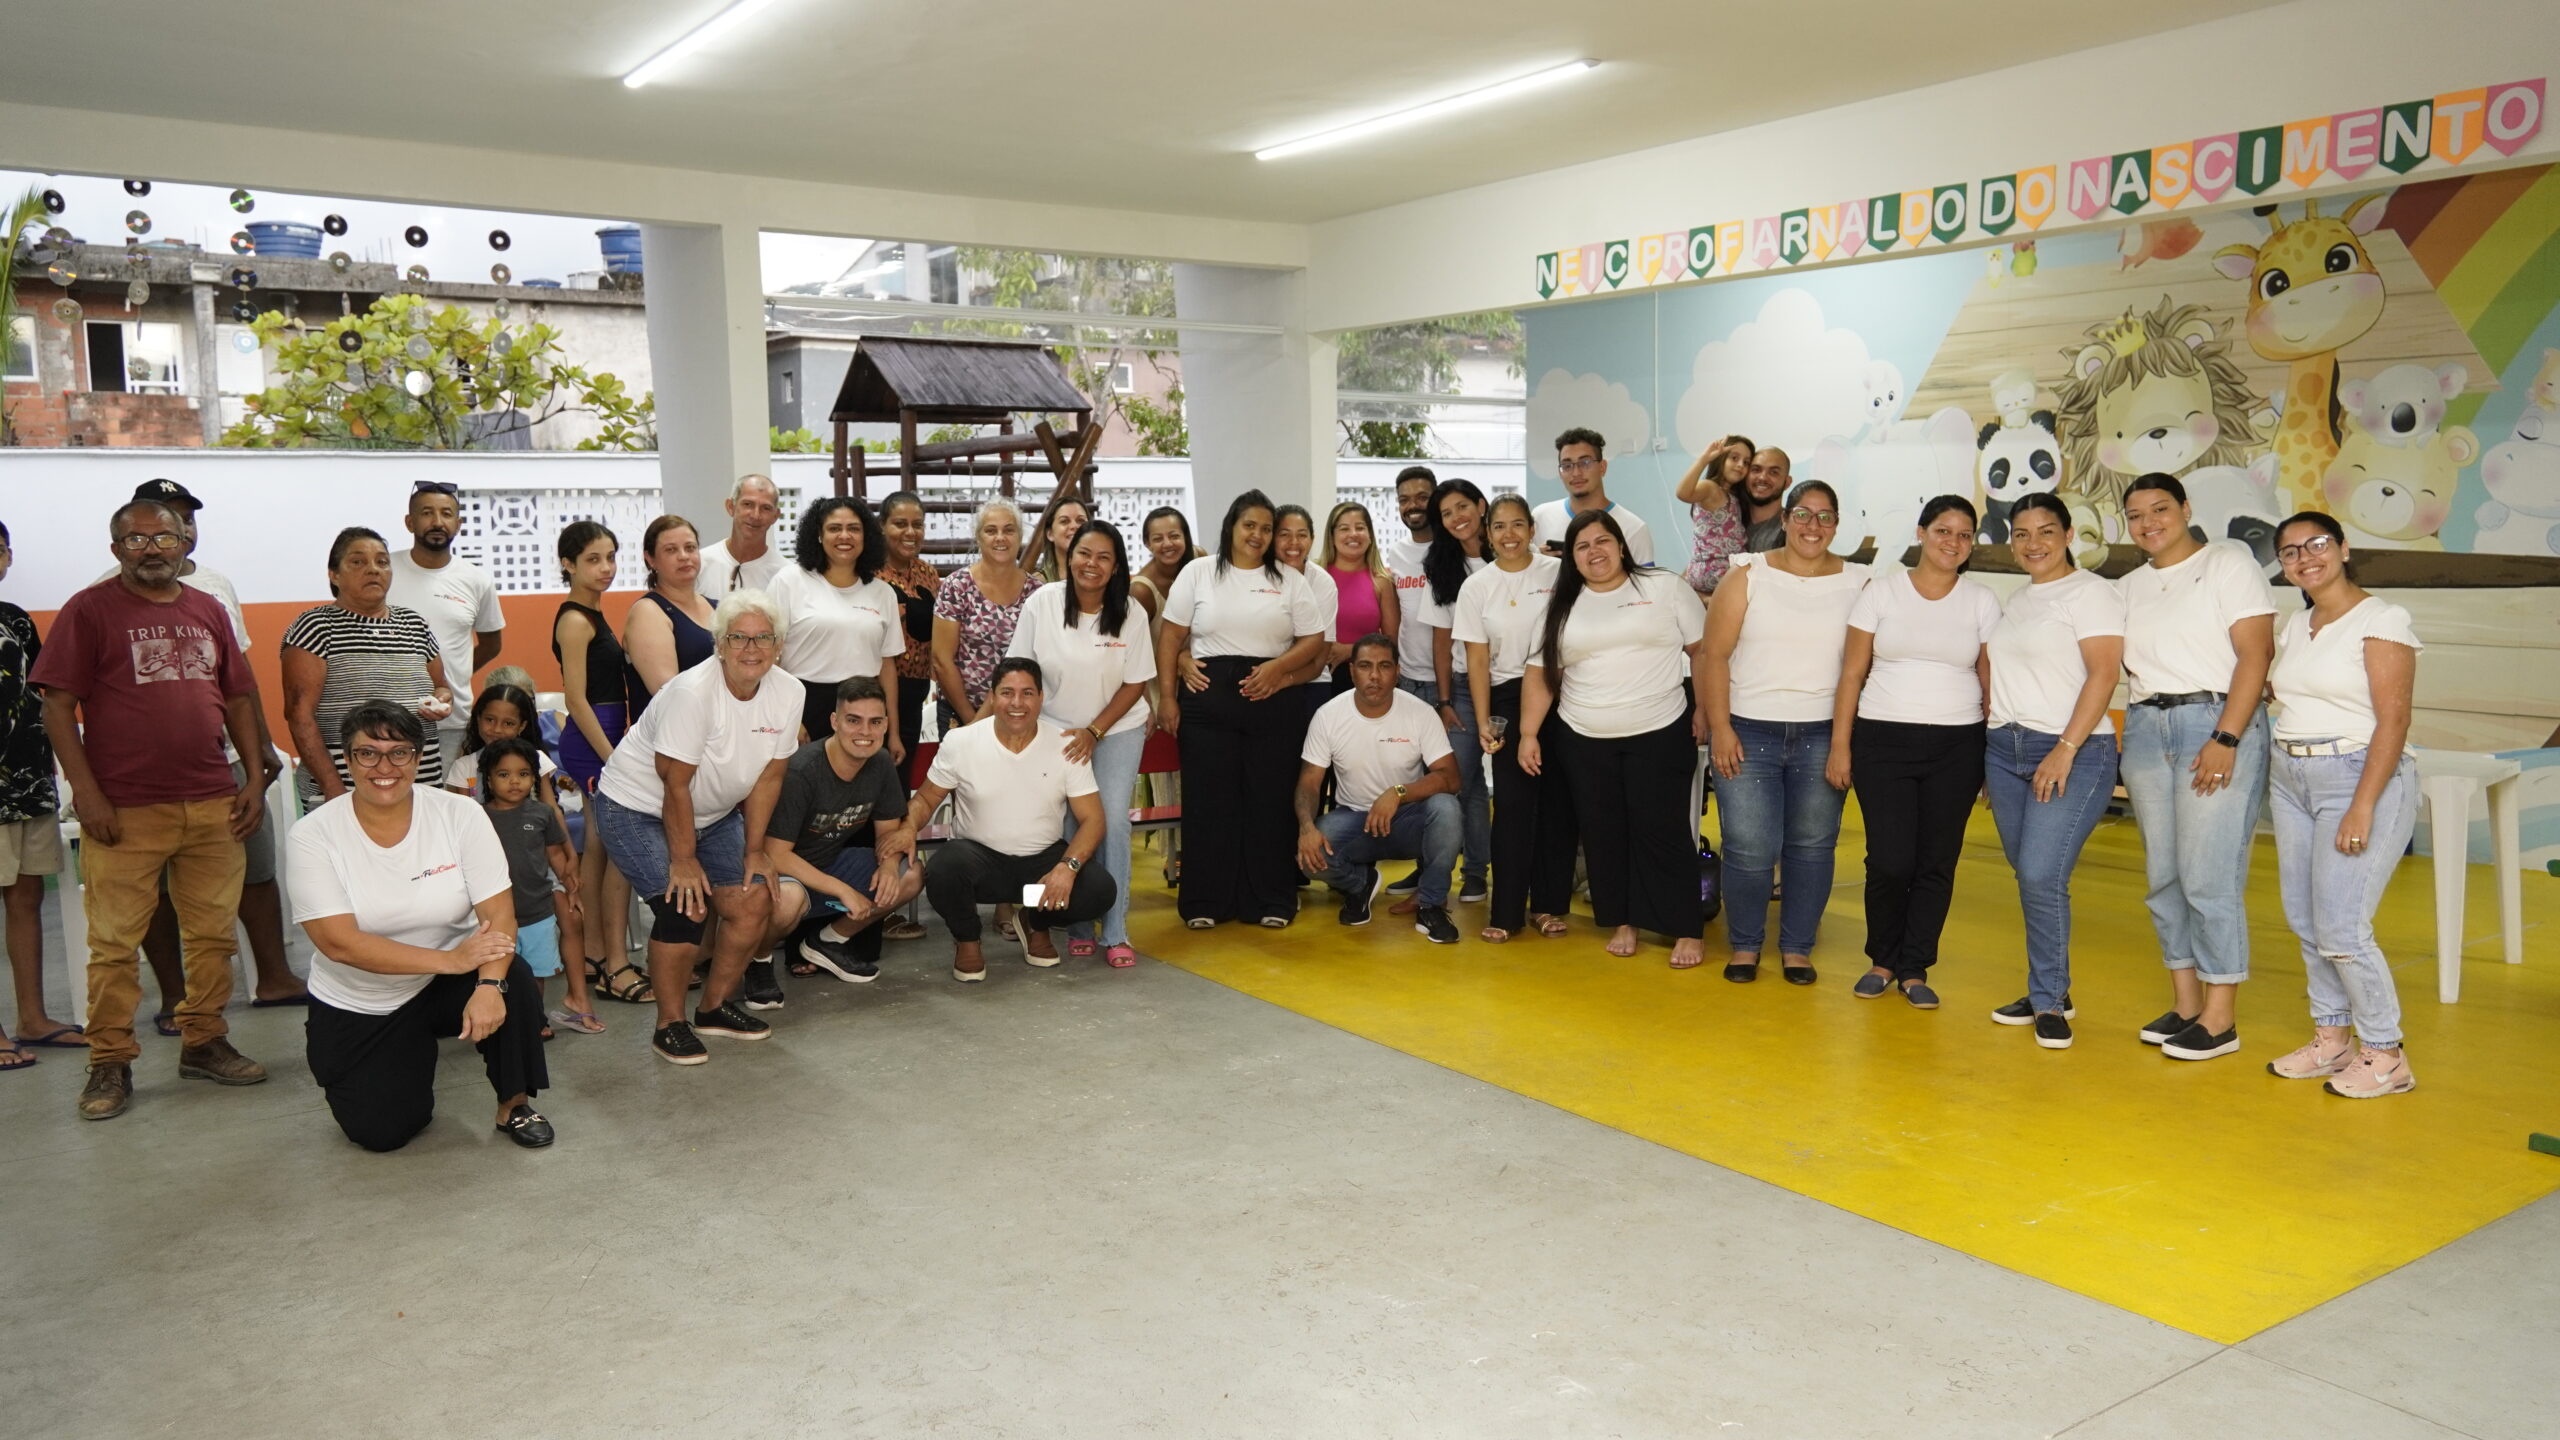 ONG FelizCidade Realiza Café da Tarde para Moradores do Bairro.